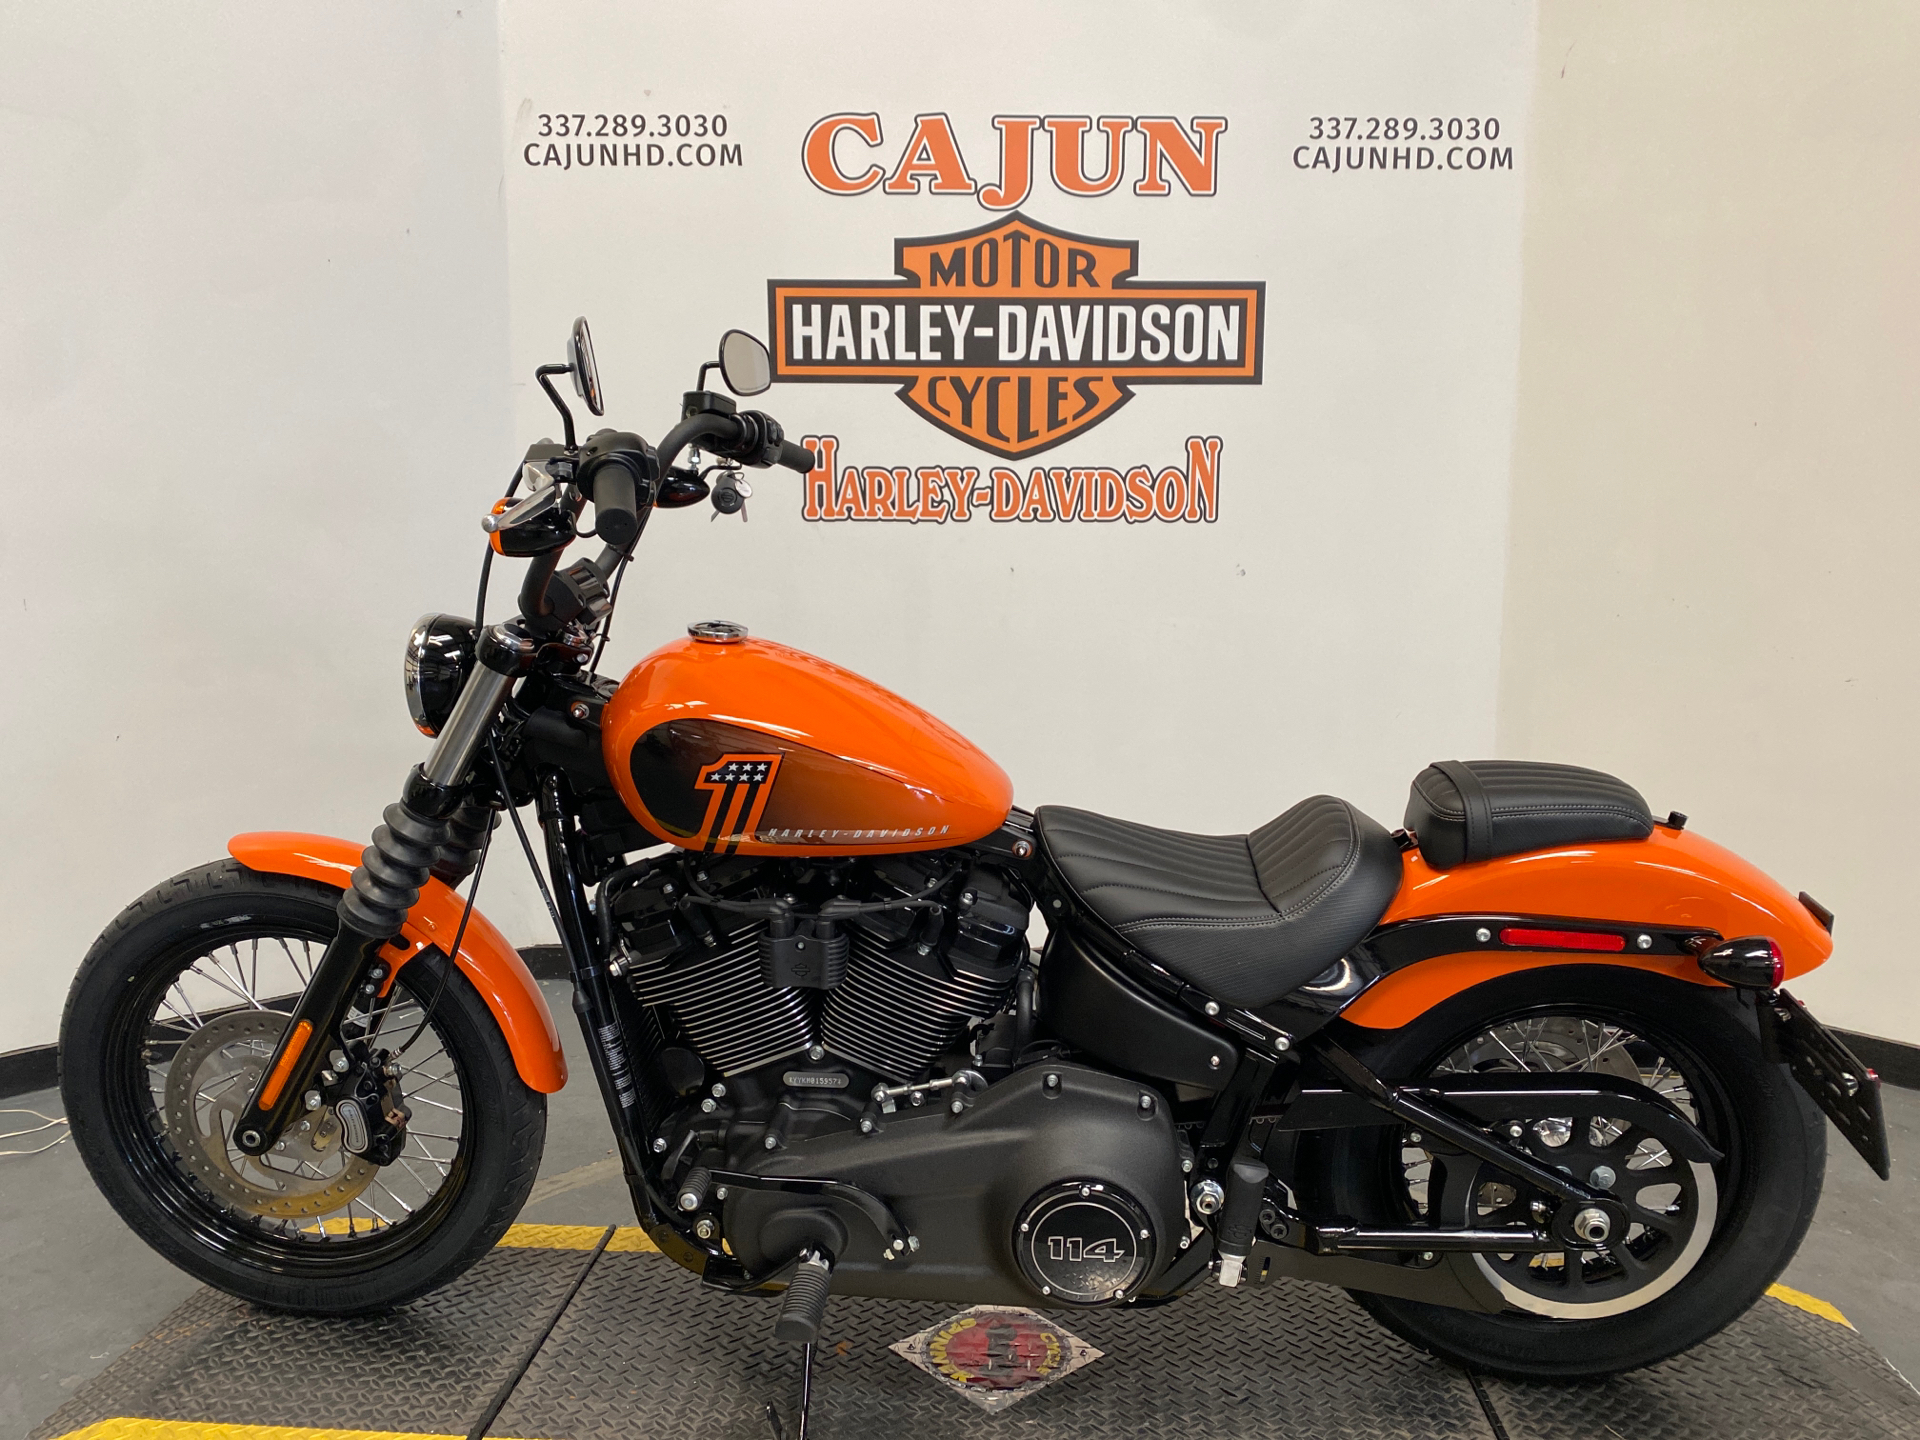 New 2021 Harley Davidson Street Bob 114 Baja Orange Motorcycles In Scott La 015957